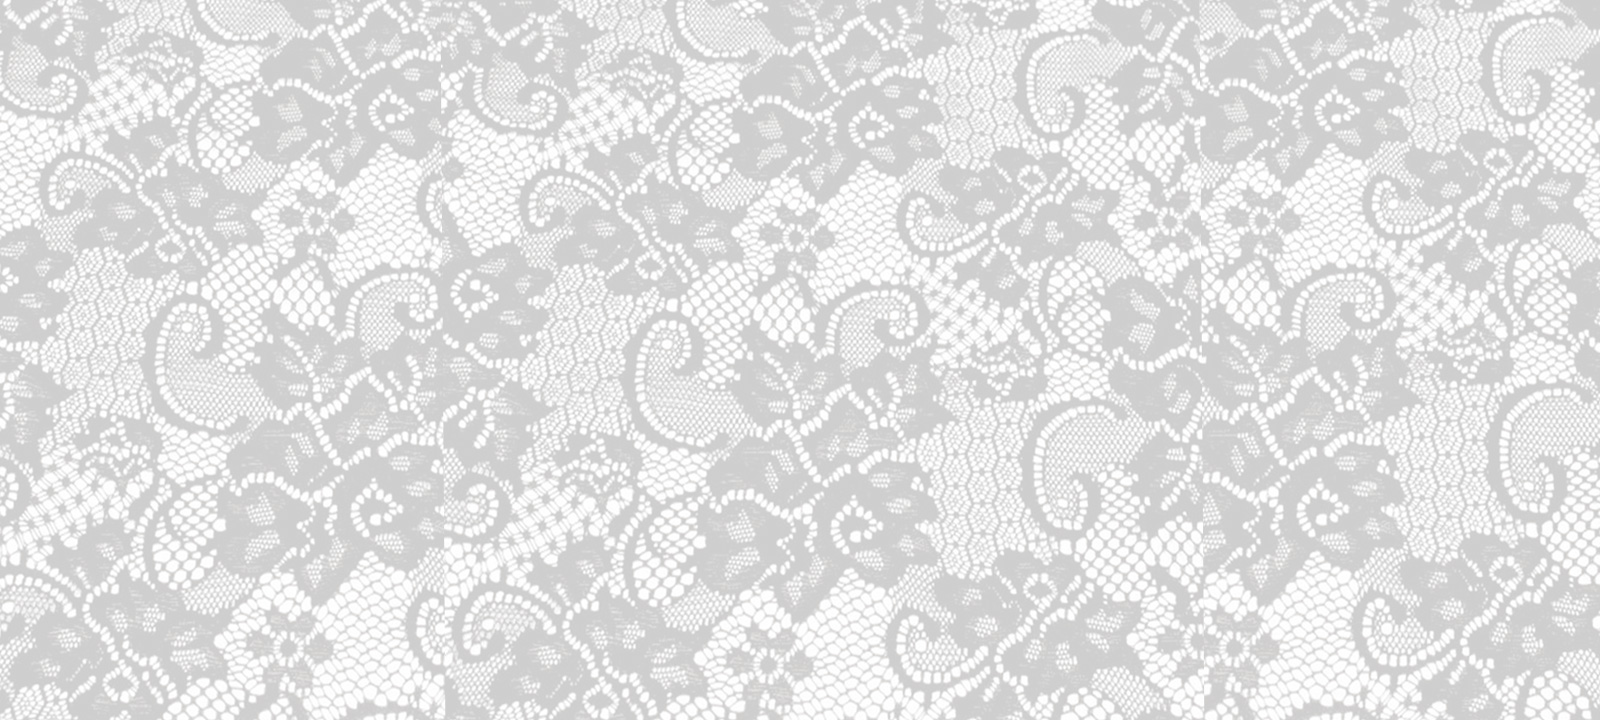  Lace backgroundjpg MPD laceLace Wallpaper Lace